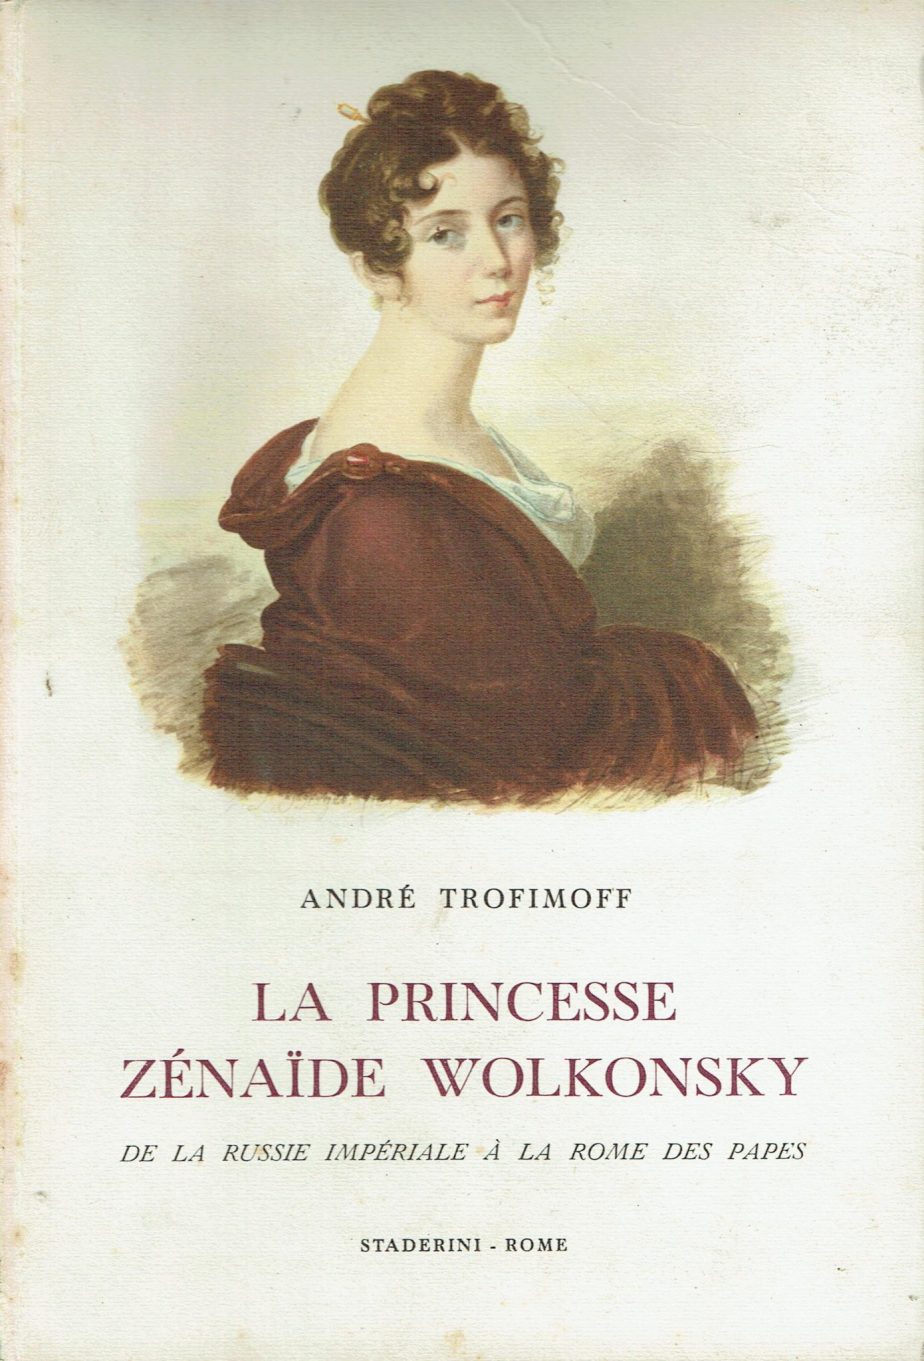 La princesse Zenaide Wolkonsky : de la Russie imperiale a la Rome des papes